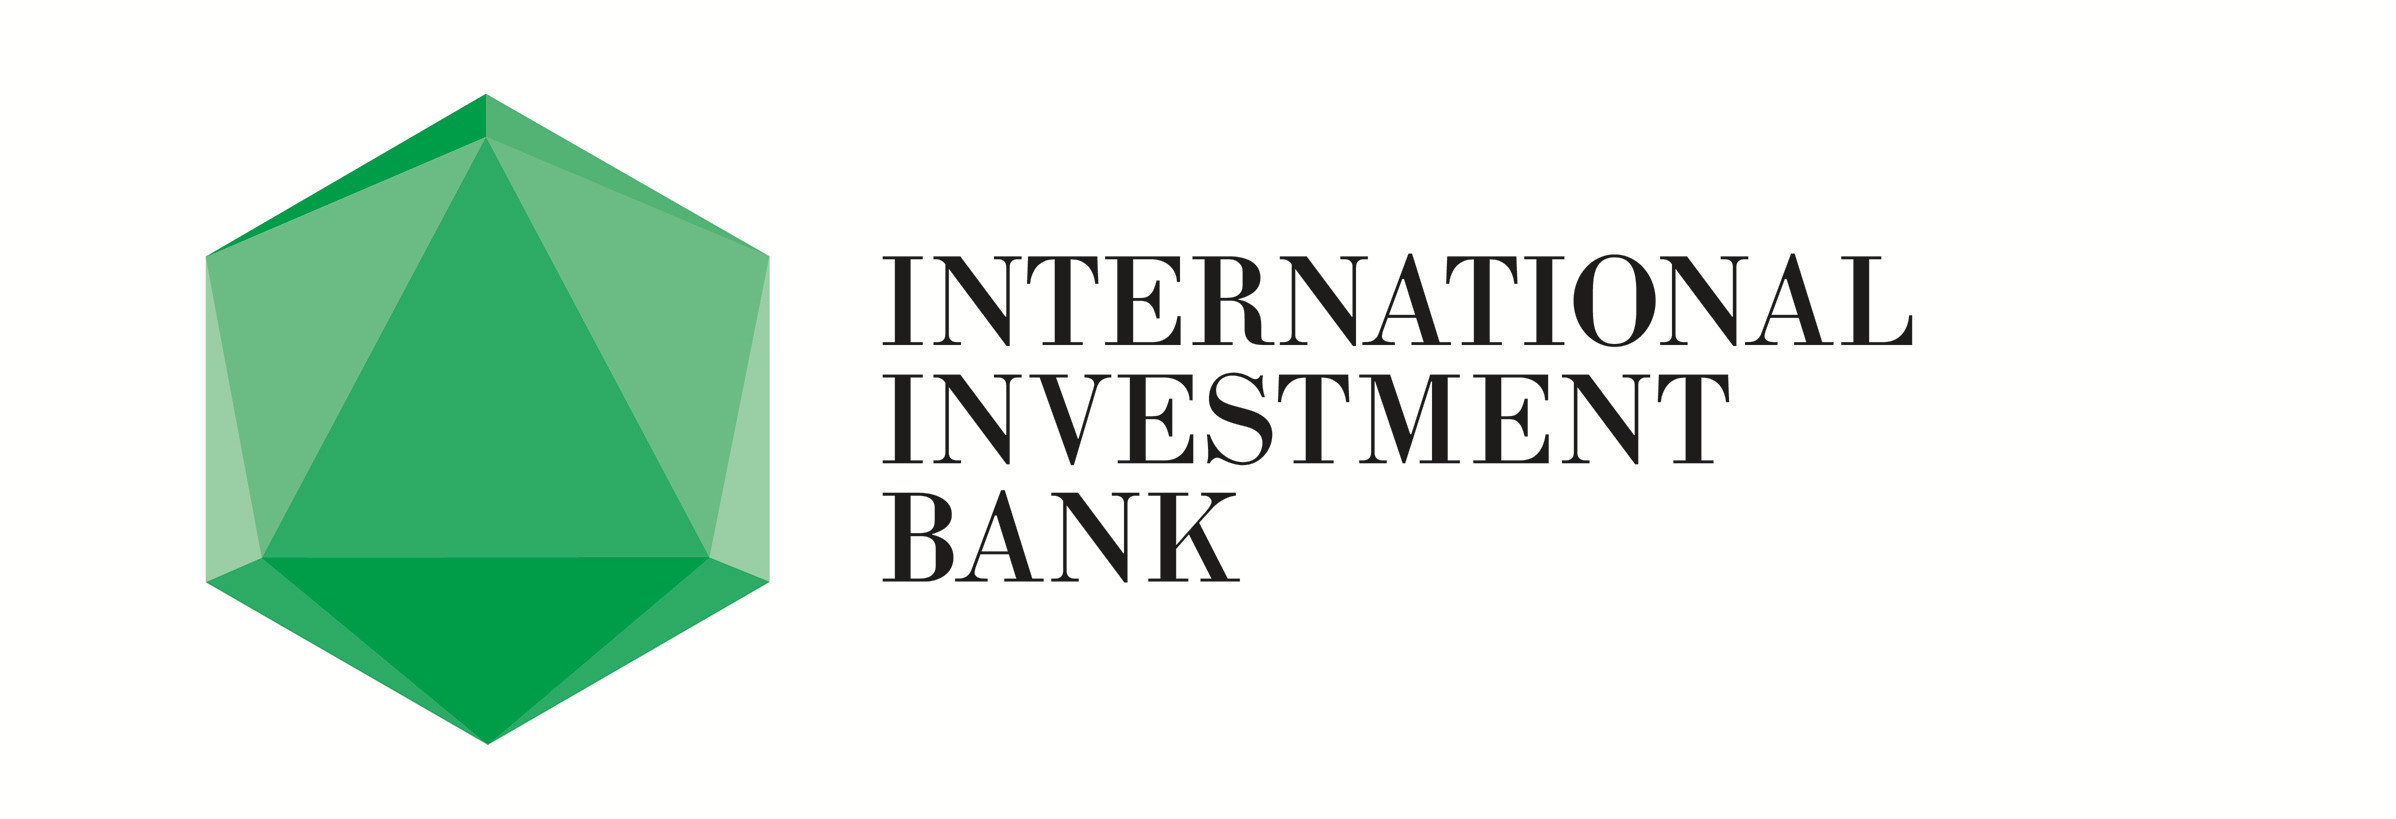 1 инвестиционный банк россии. Международный инвестиционный банк. Международный инвестиционный банк МИБ. Международный инвестиционный банк logo. Международный банк эмблема.